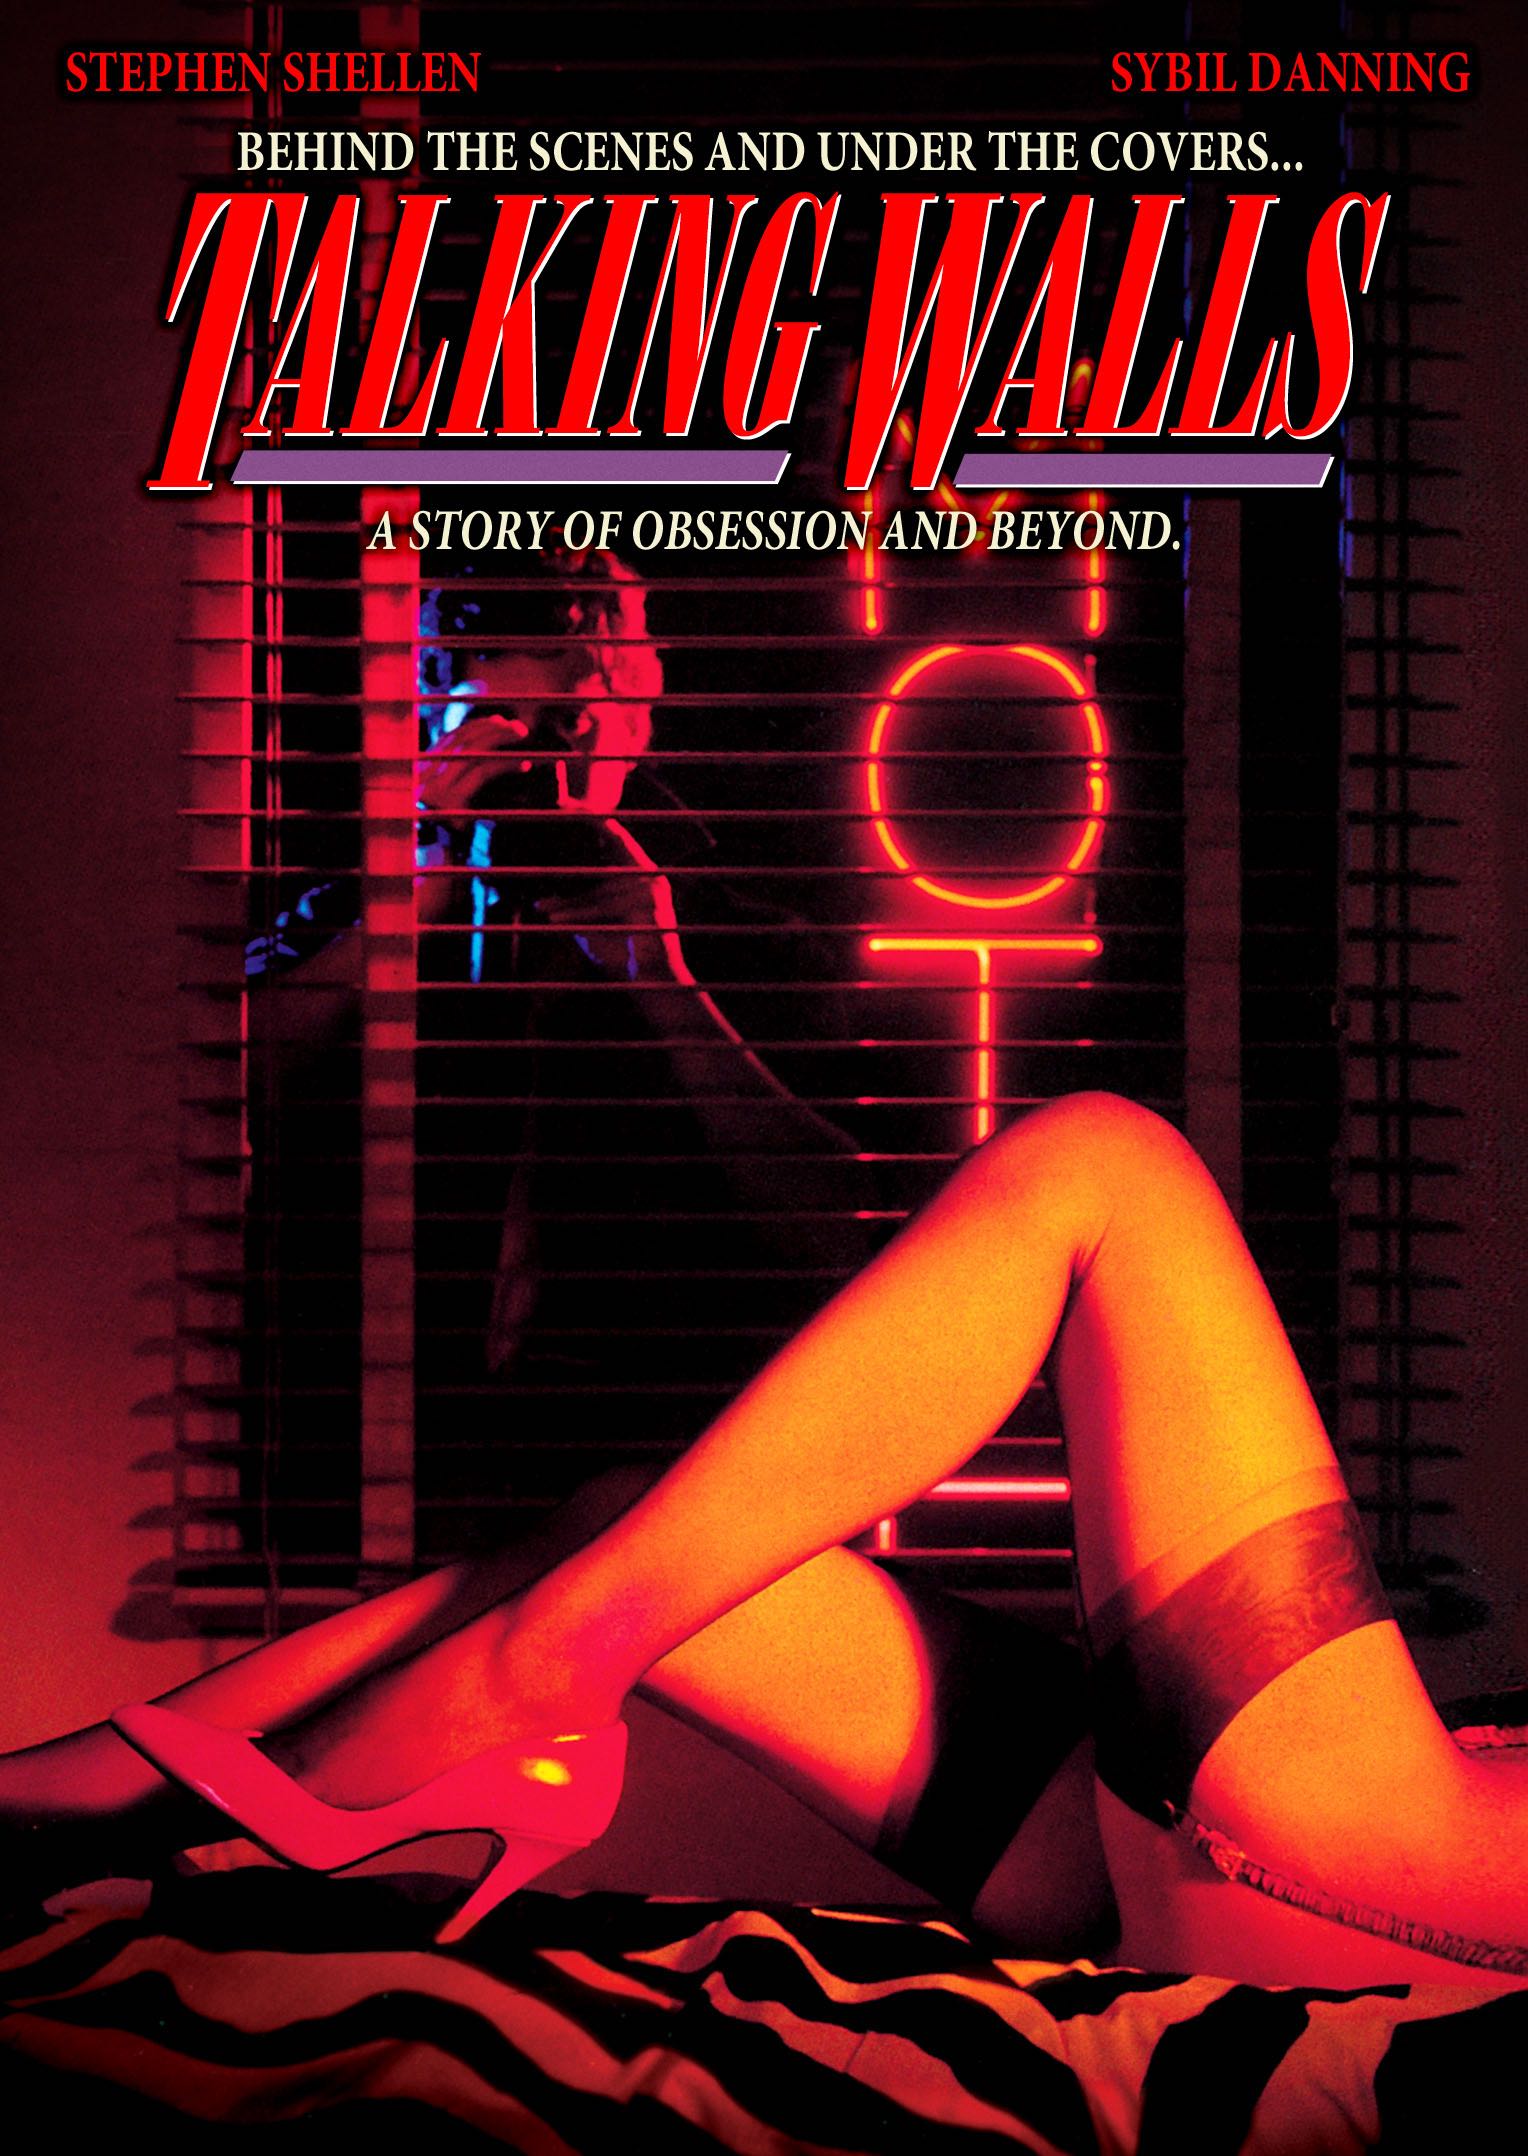 Talking Walls (1987) Screenshot 1